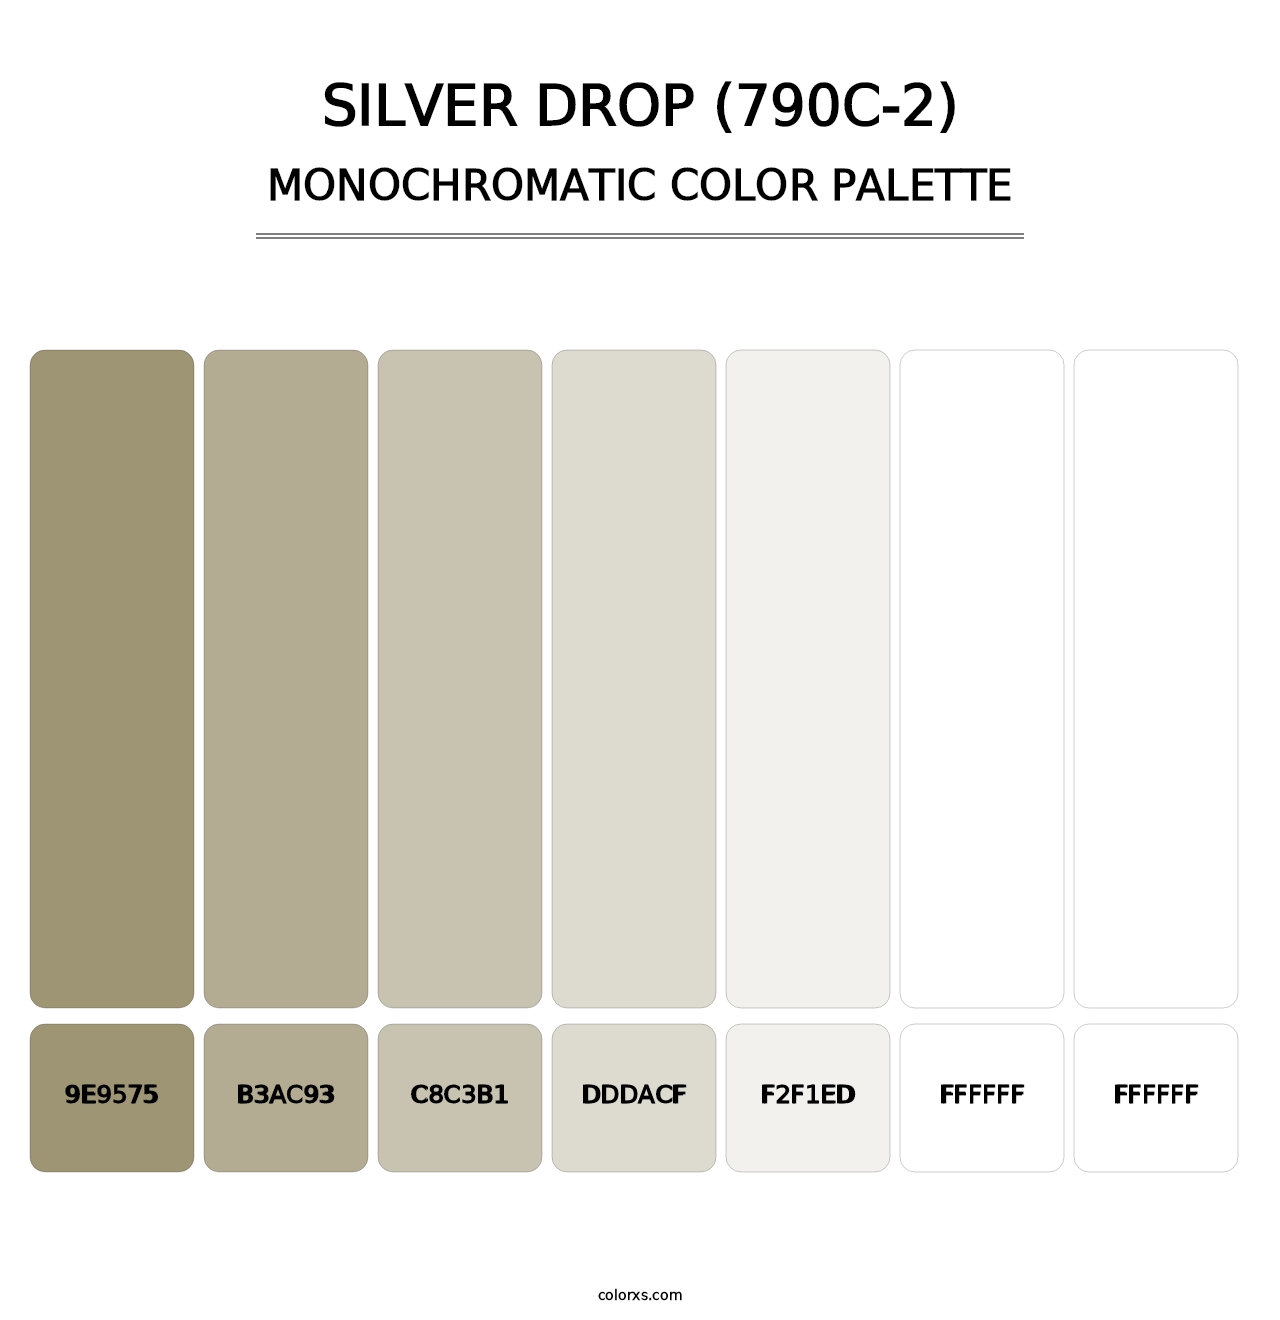 Silver Drop (790C-2) - Monochromatic Color Palette